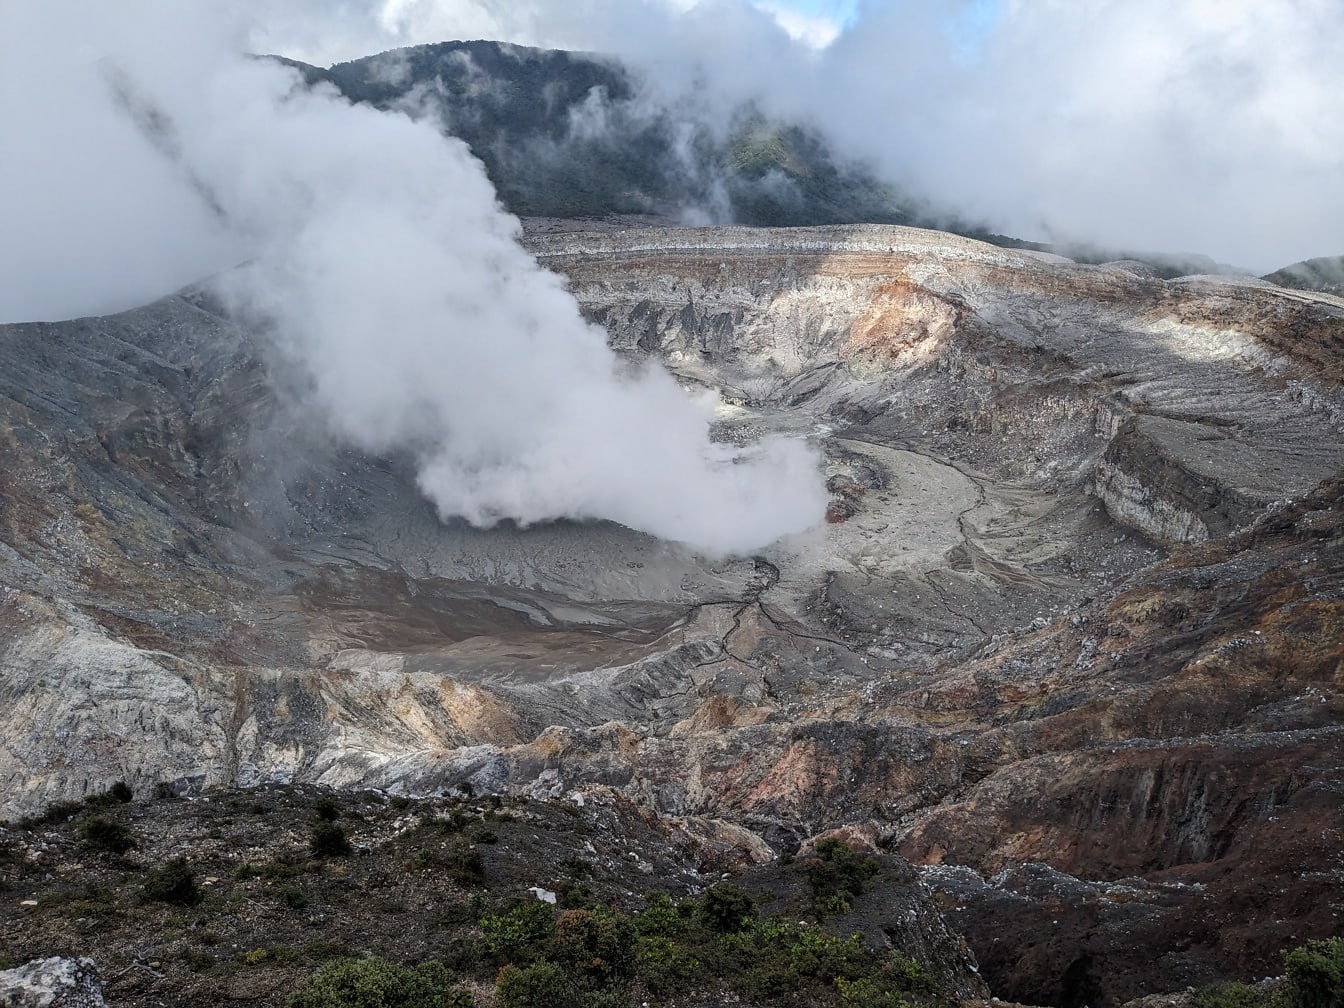 Krajobraz krateru wulkanu Poás w Kostaryce z wydobywającym się z niego dymem